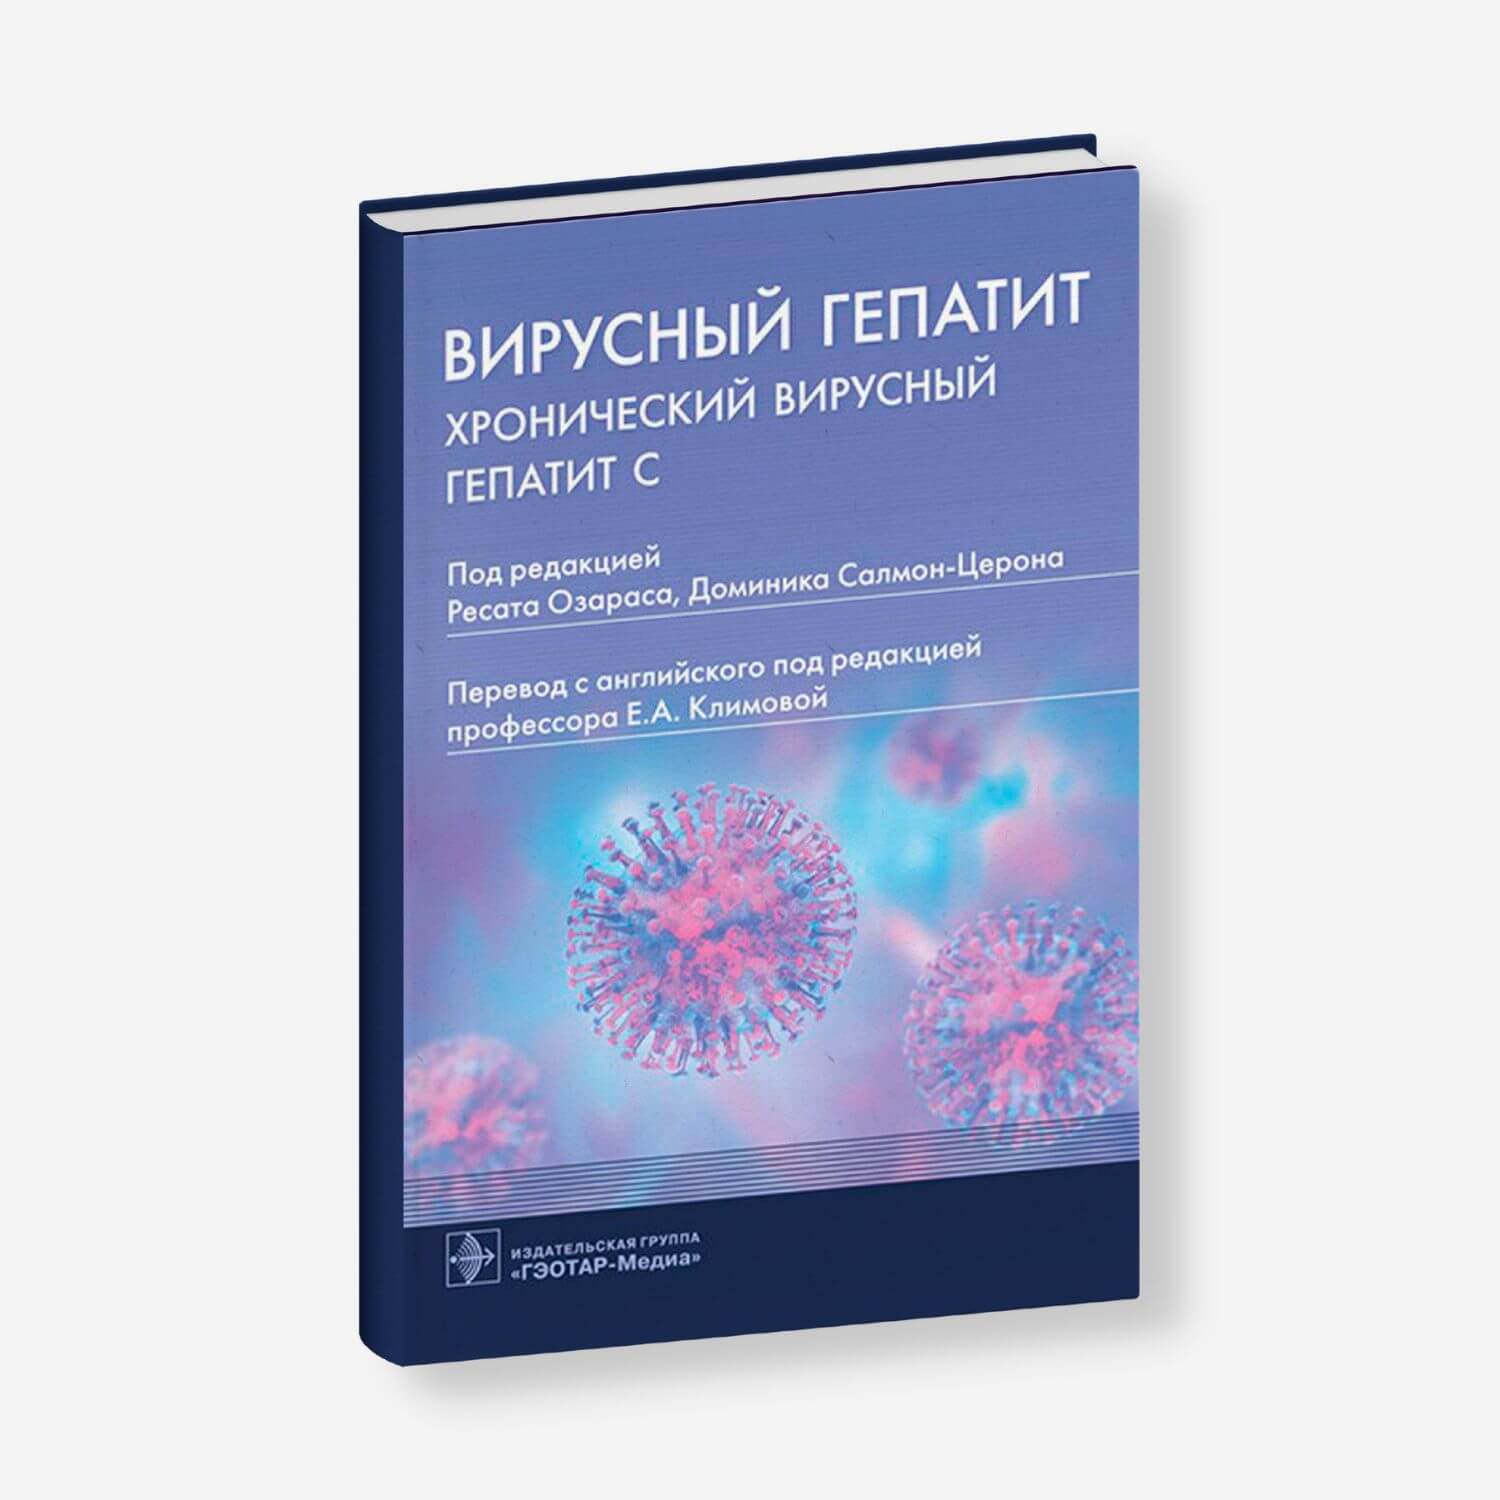 Вирусный гепатит. Хронический вирусный гепатит С